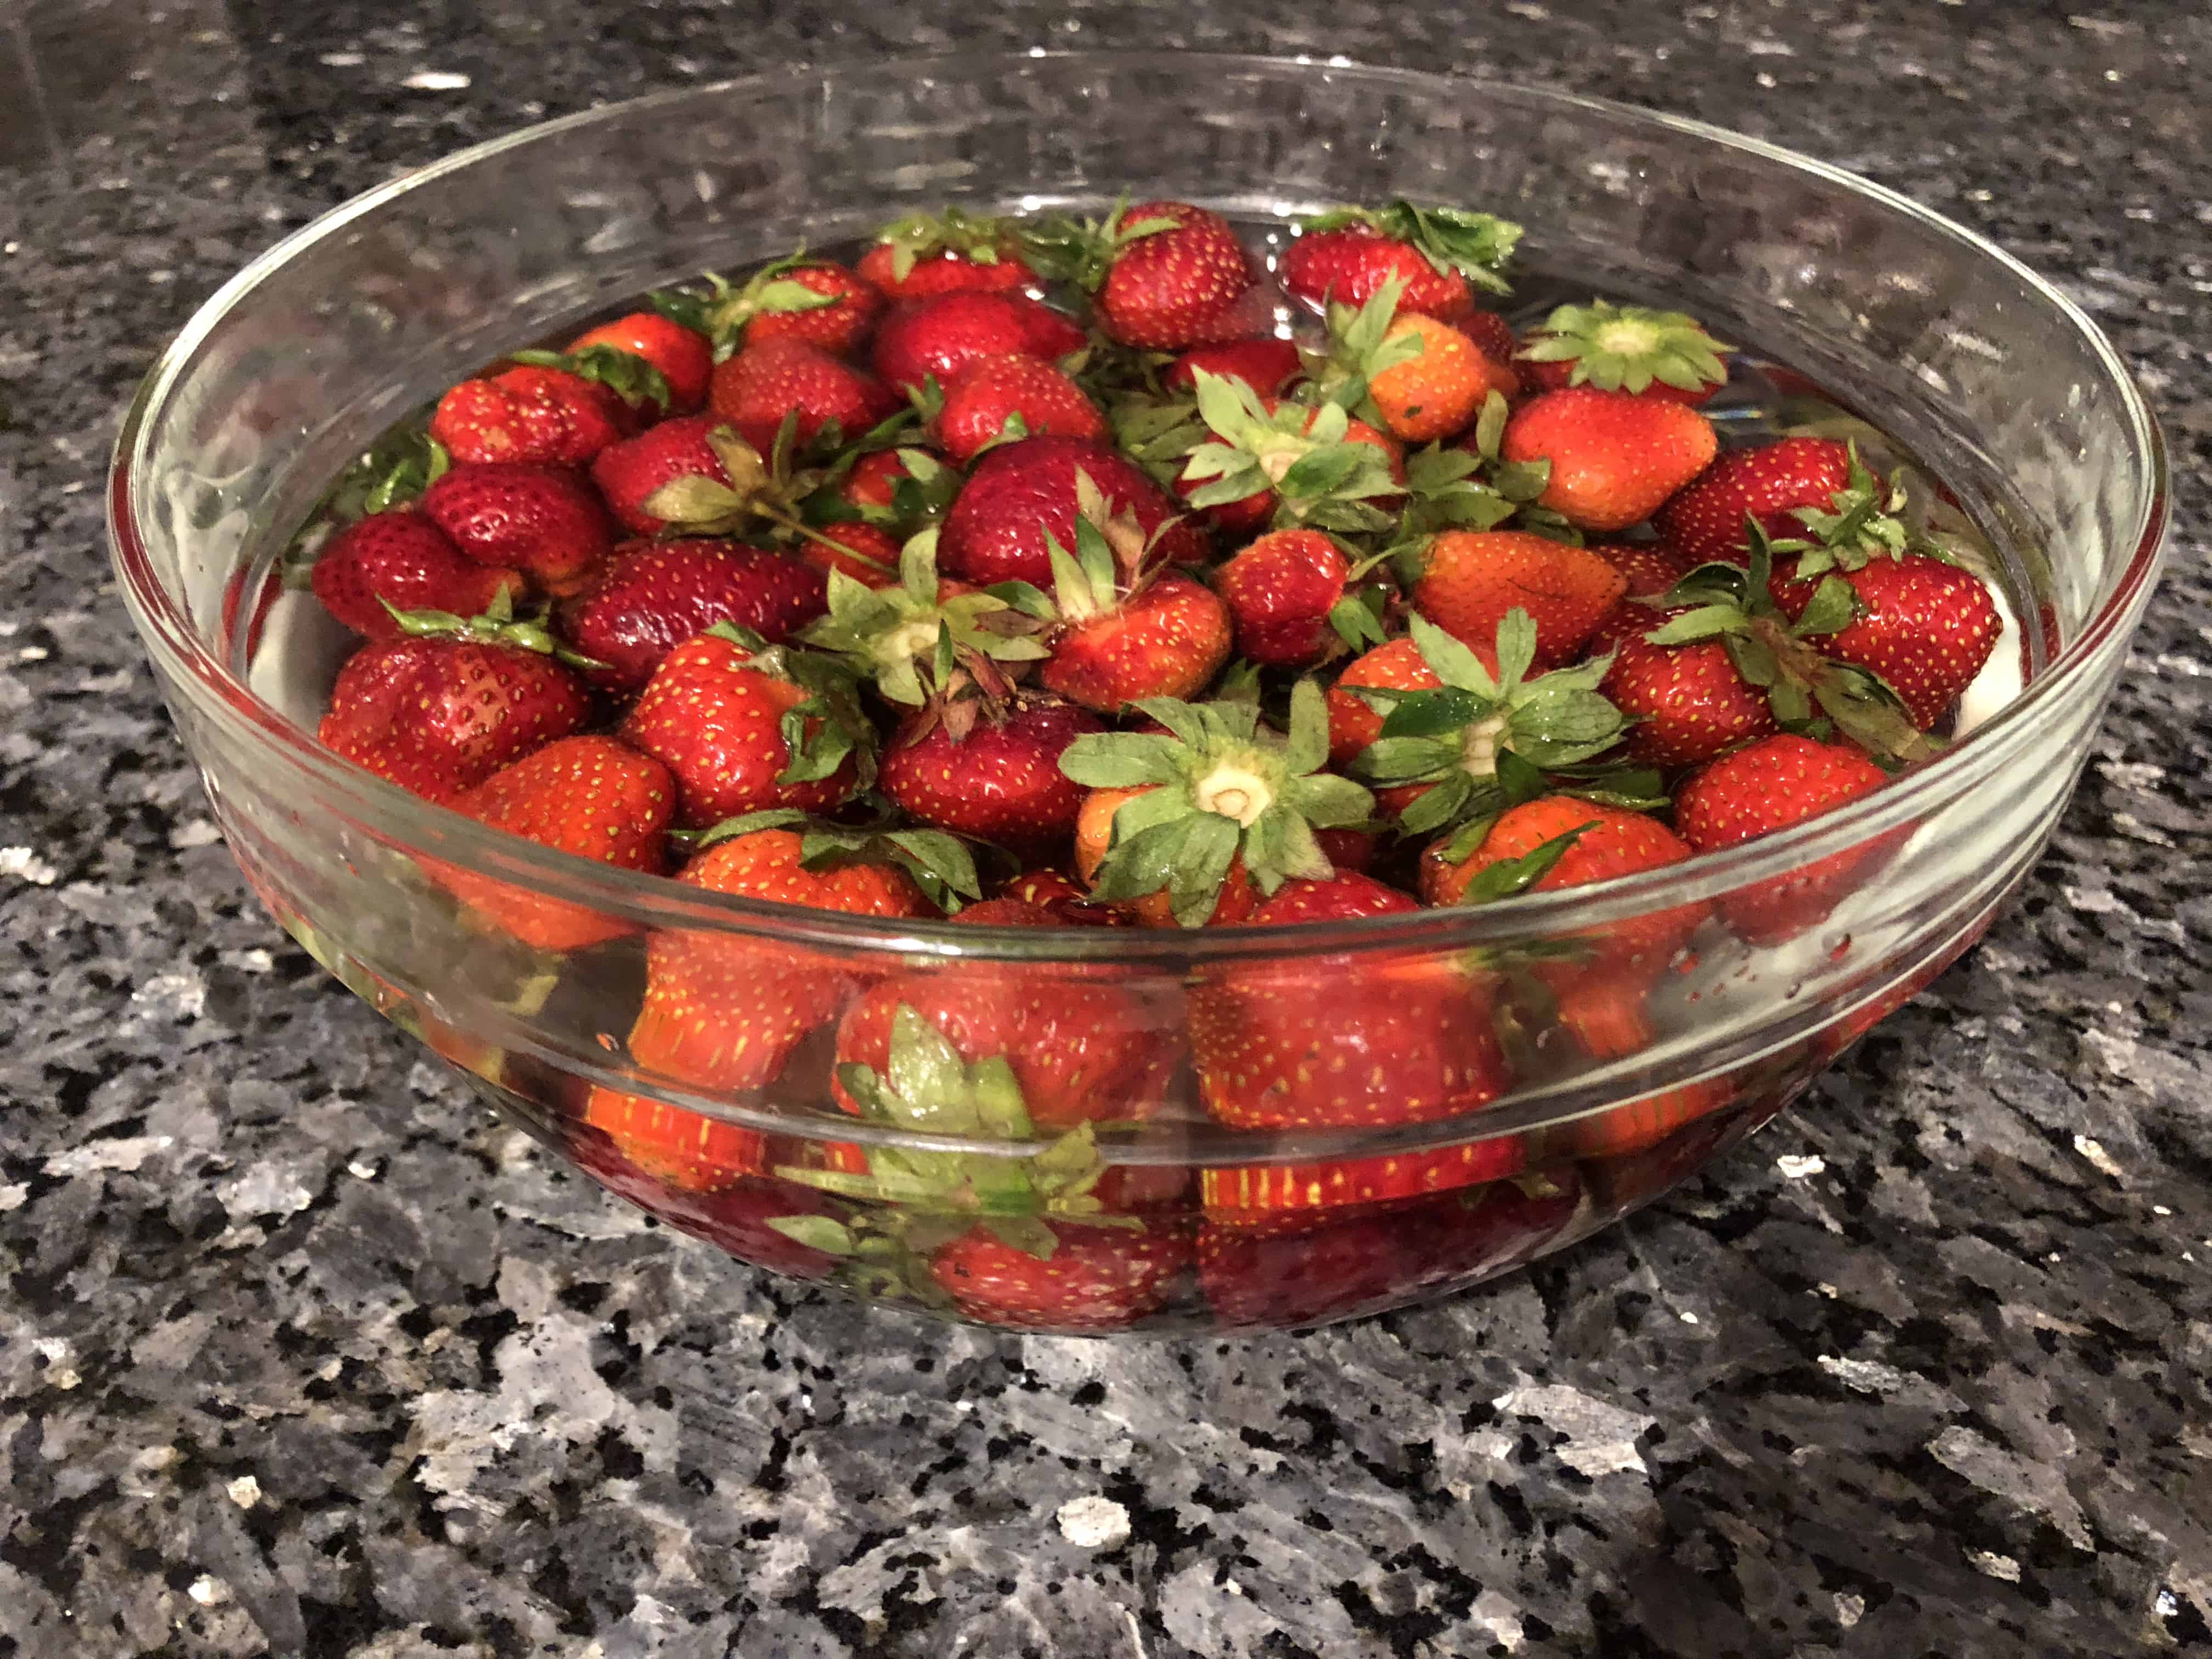 Soak strawberries in vinegar and water to keep strawberries fresh